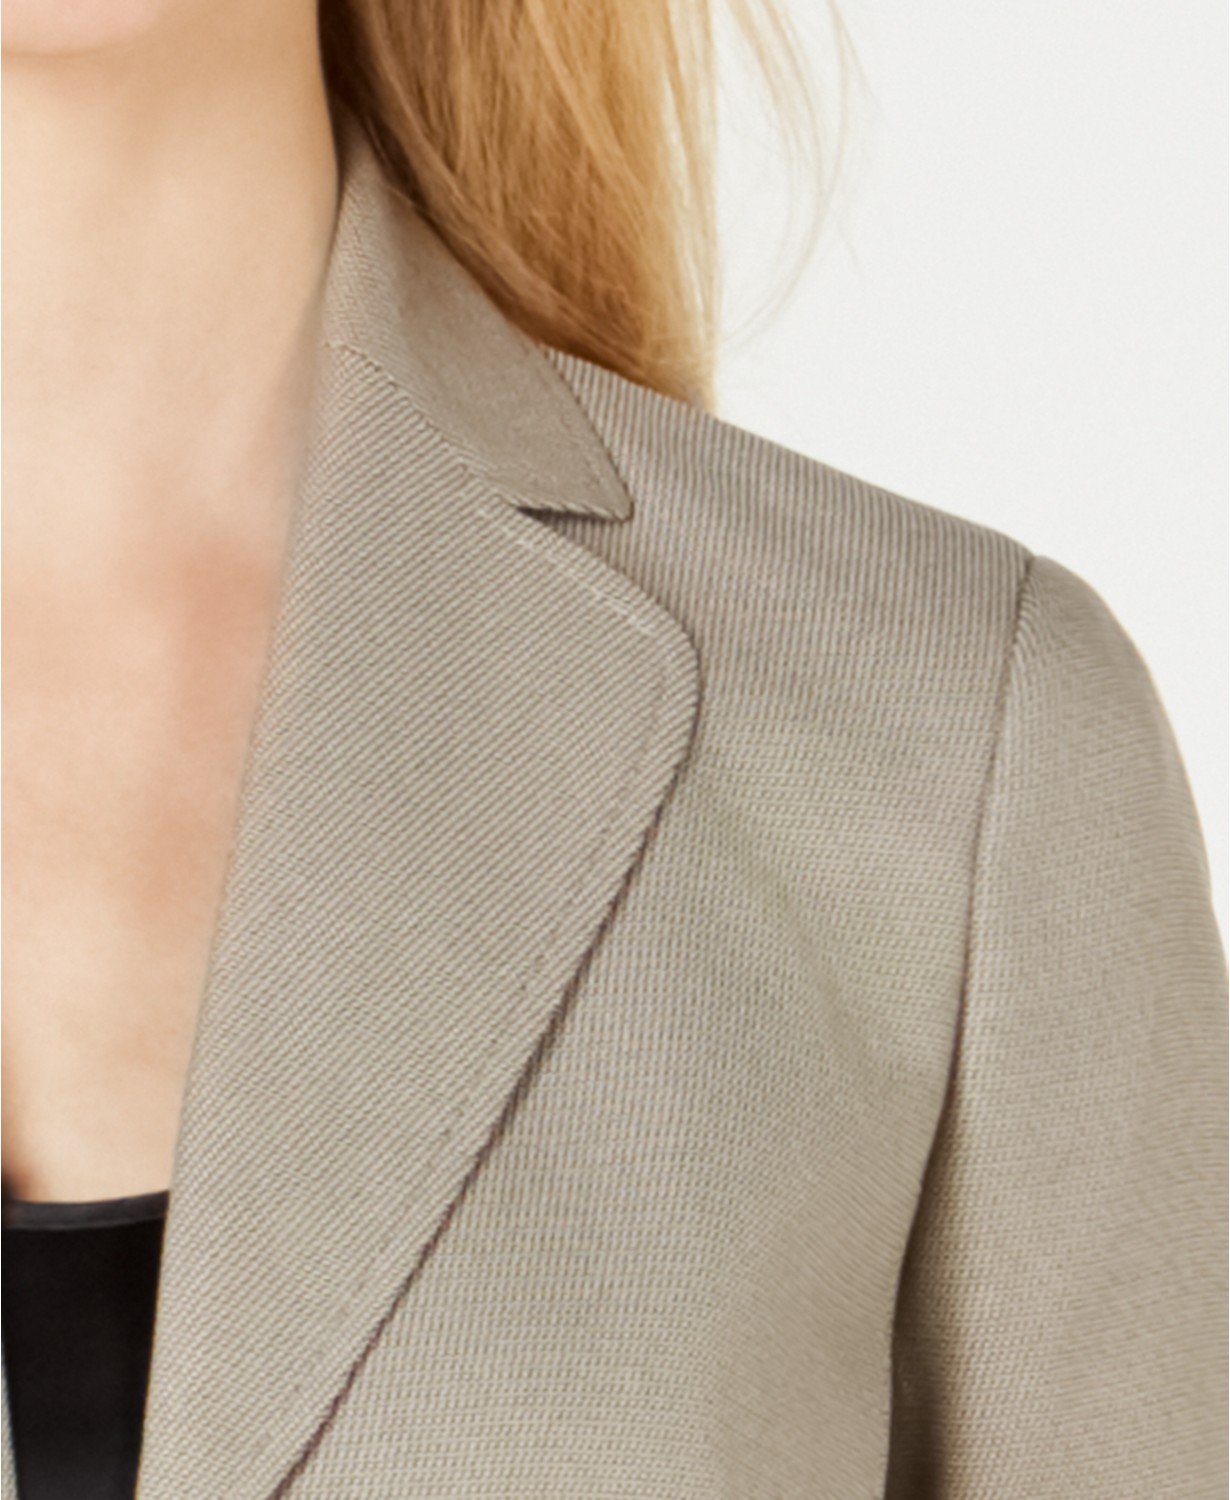 Le Suit Women's Beige/black Textured Two-button Pantsuit Jacket only - TopLine Fashion Lounge